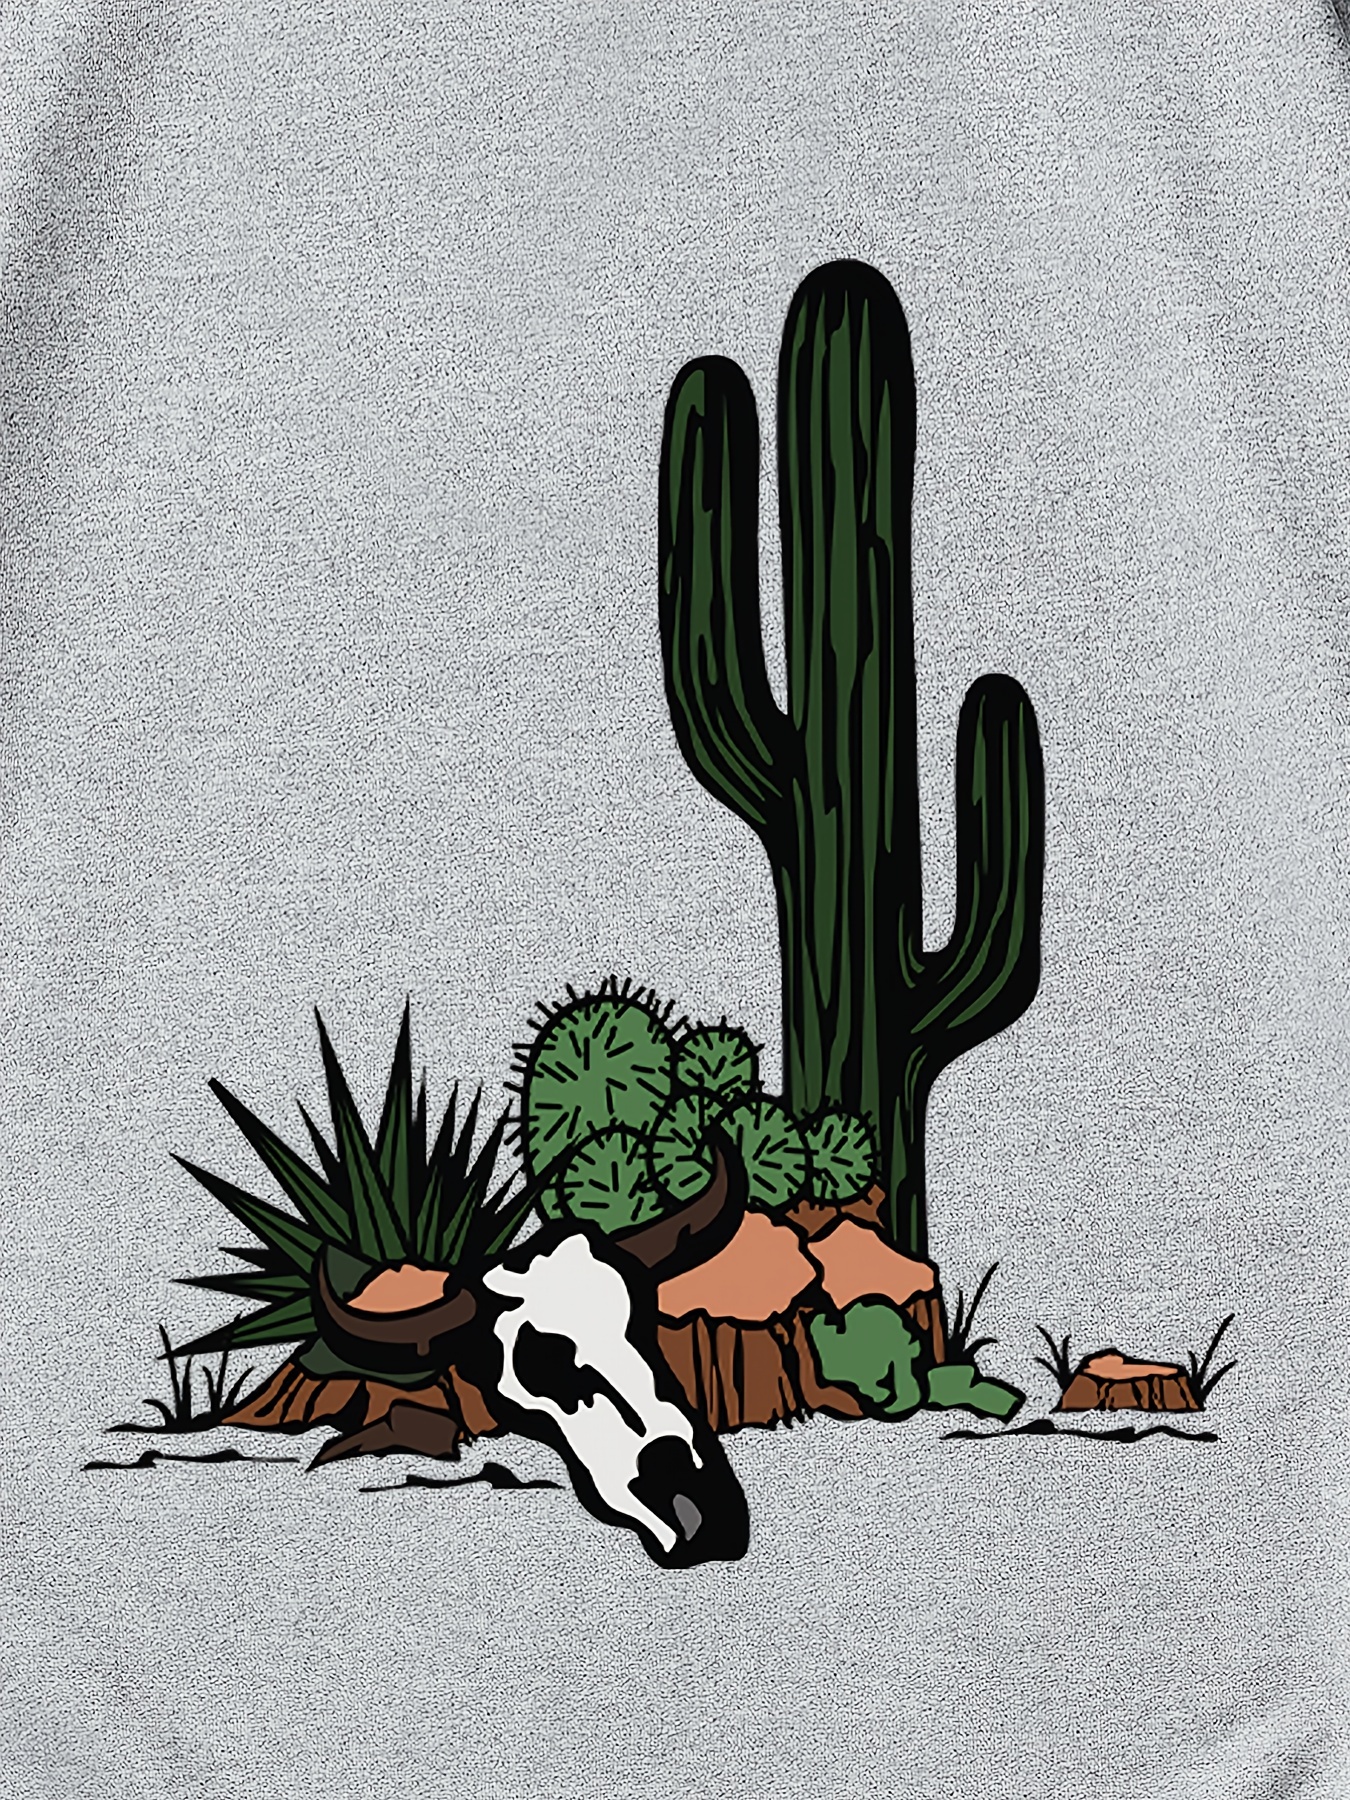 Cactus Shirt